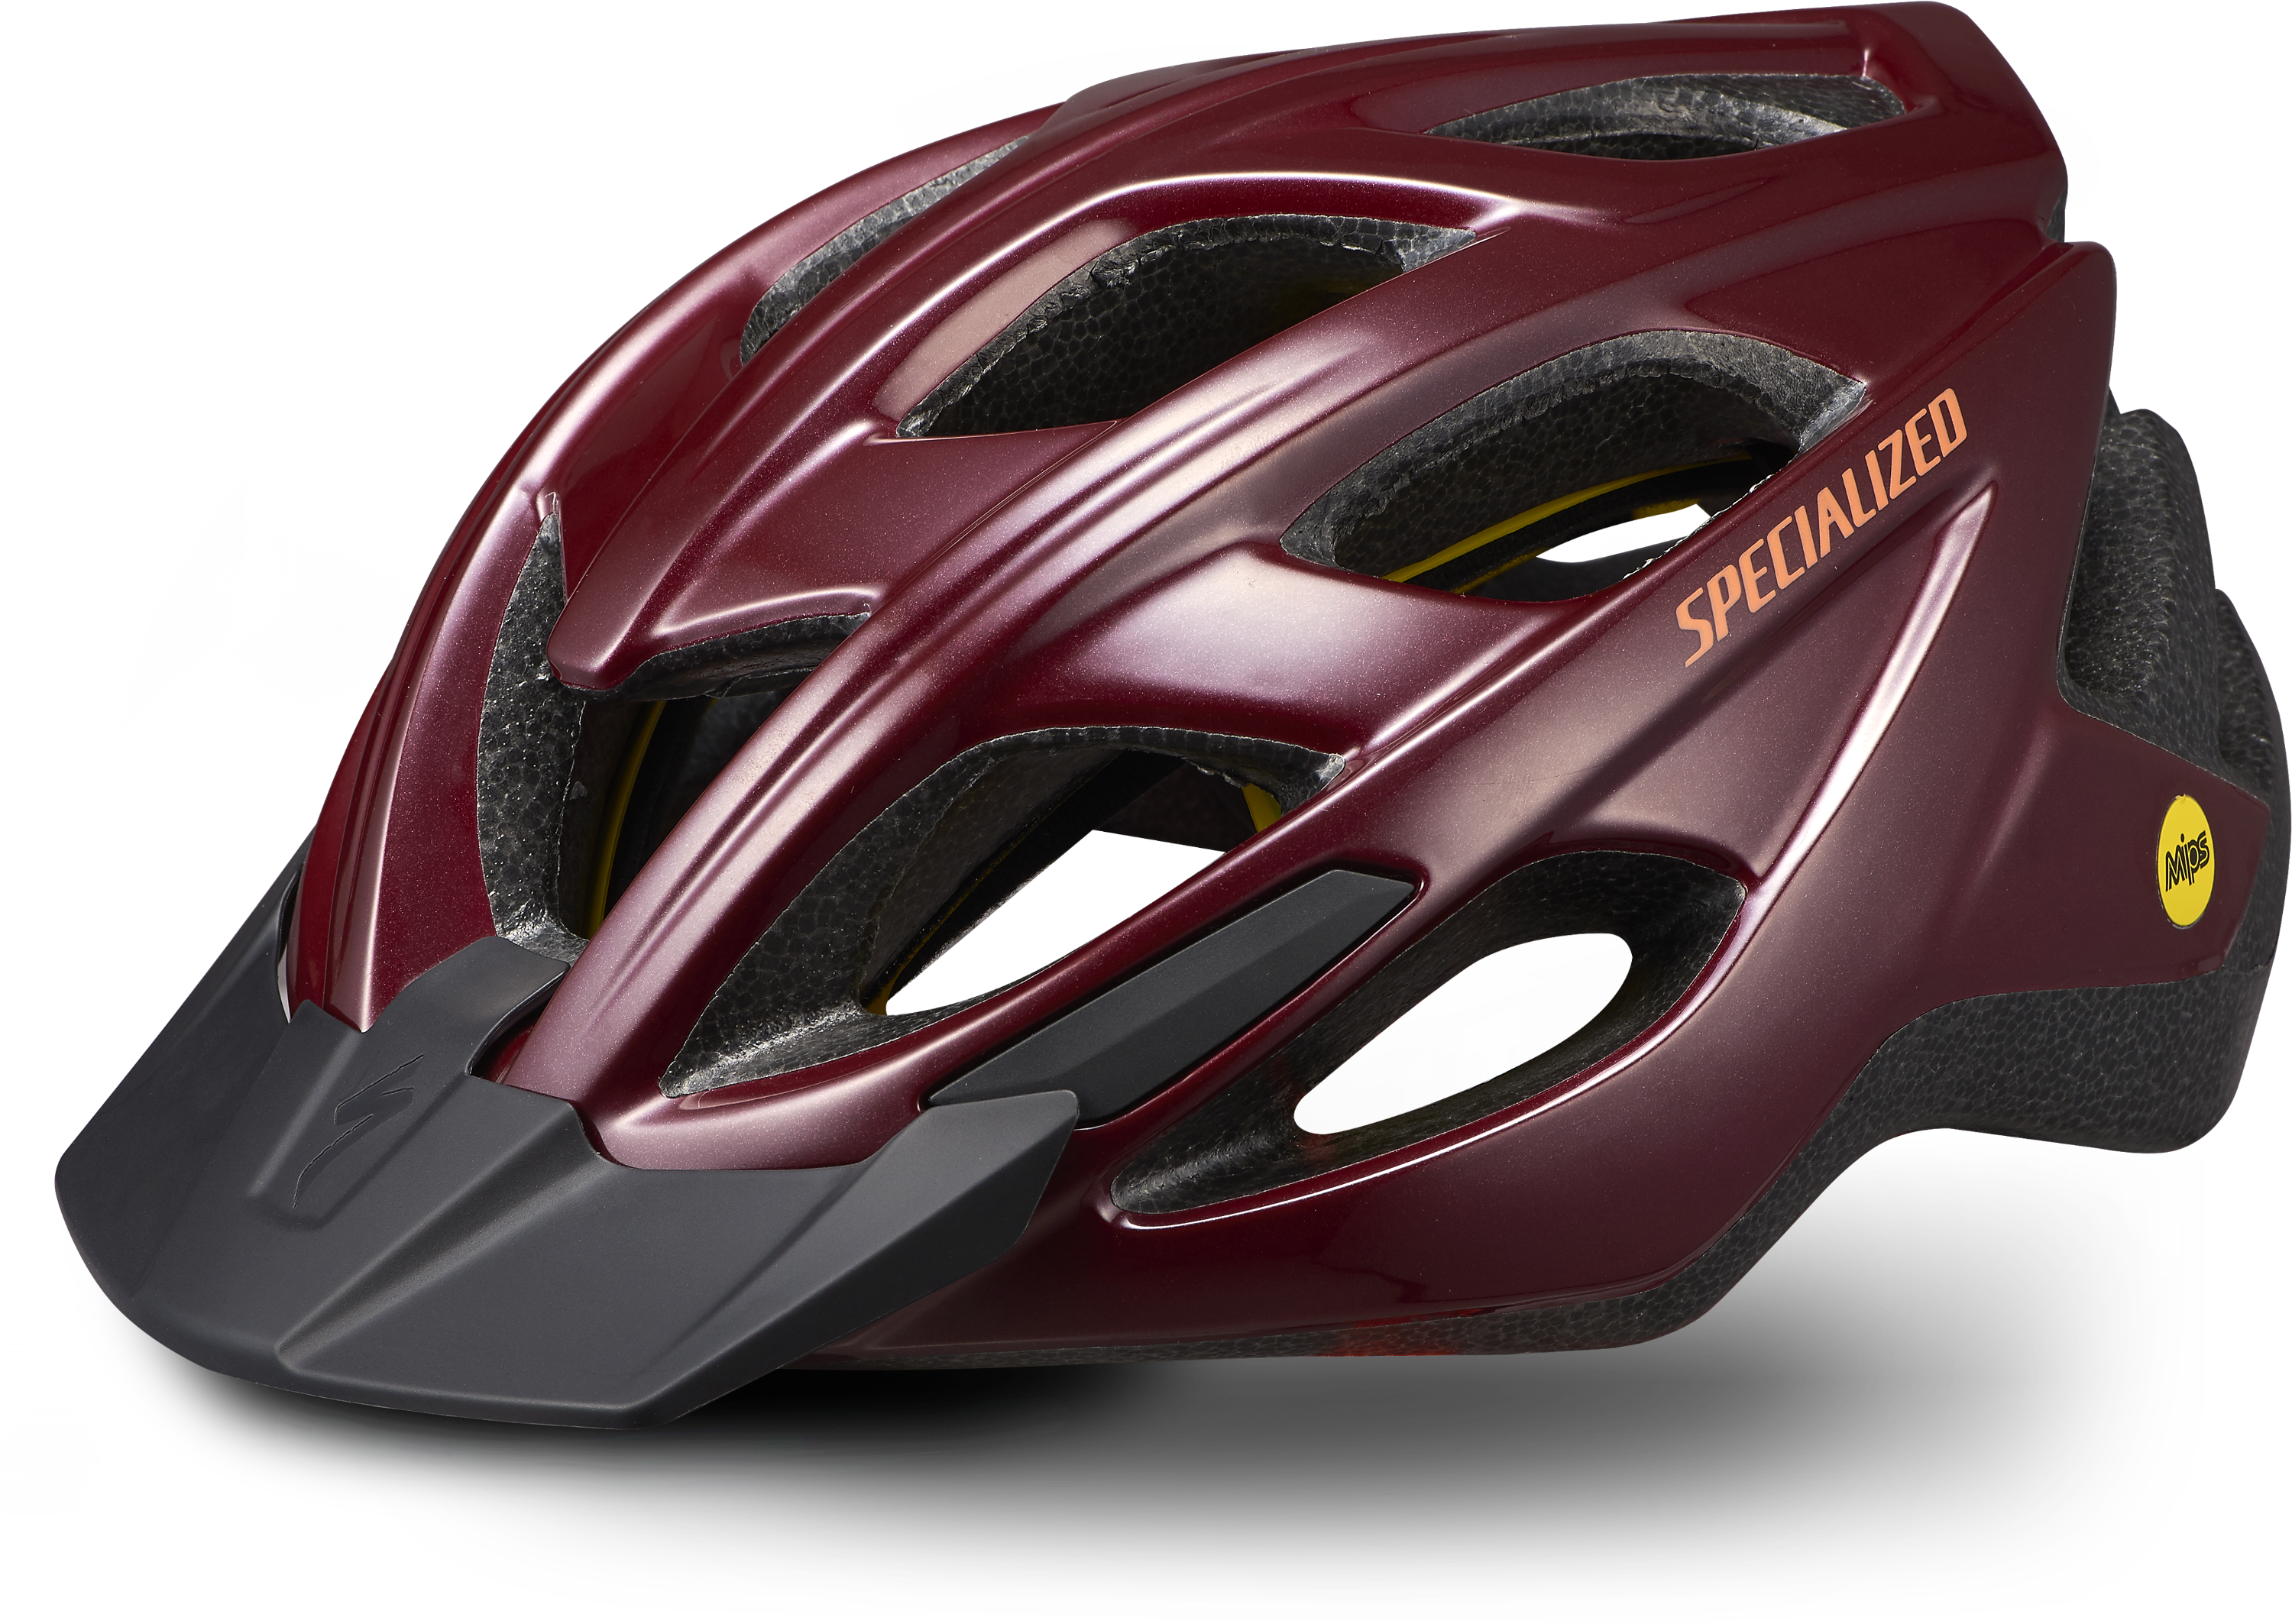 Beklædning - Cykelhjelme - Specialized Chamonix 2 MIPS Cykelhjelm - Rød